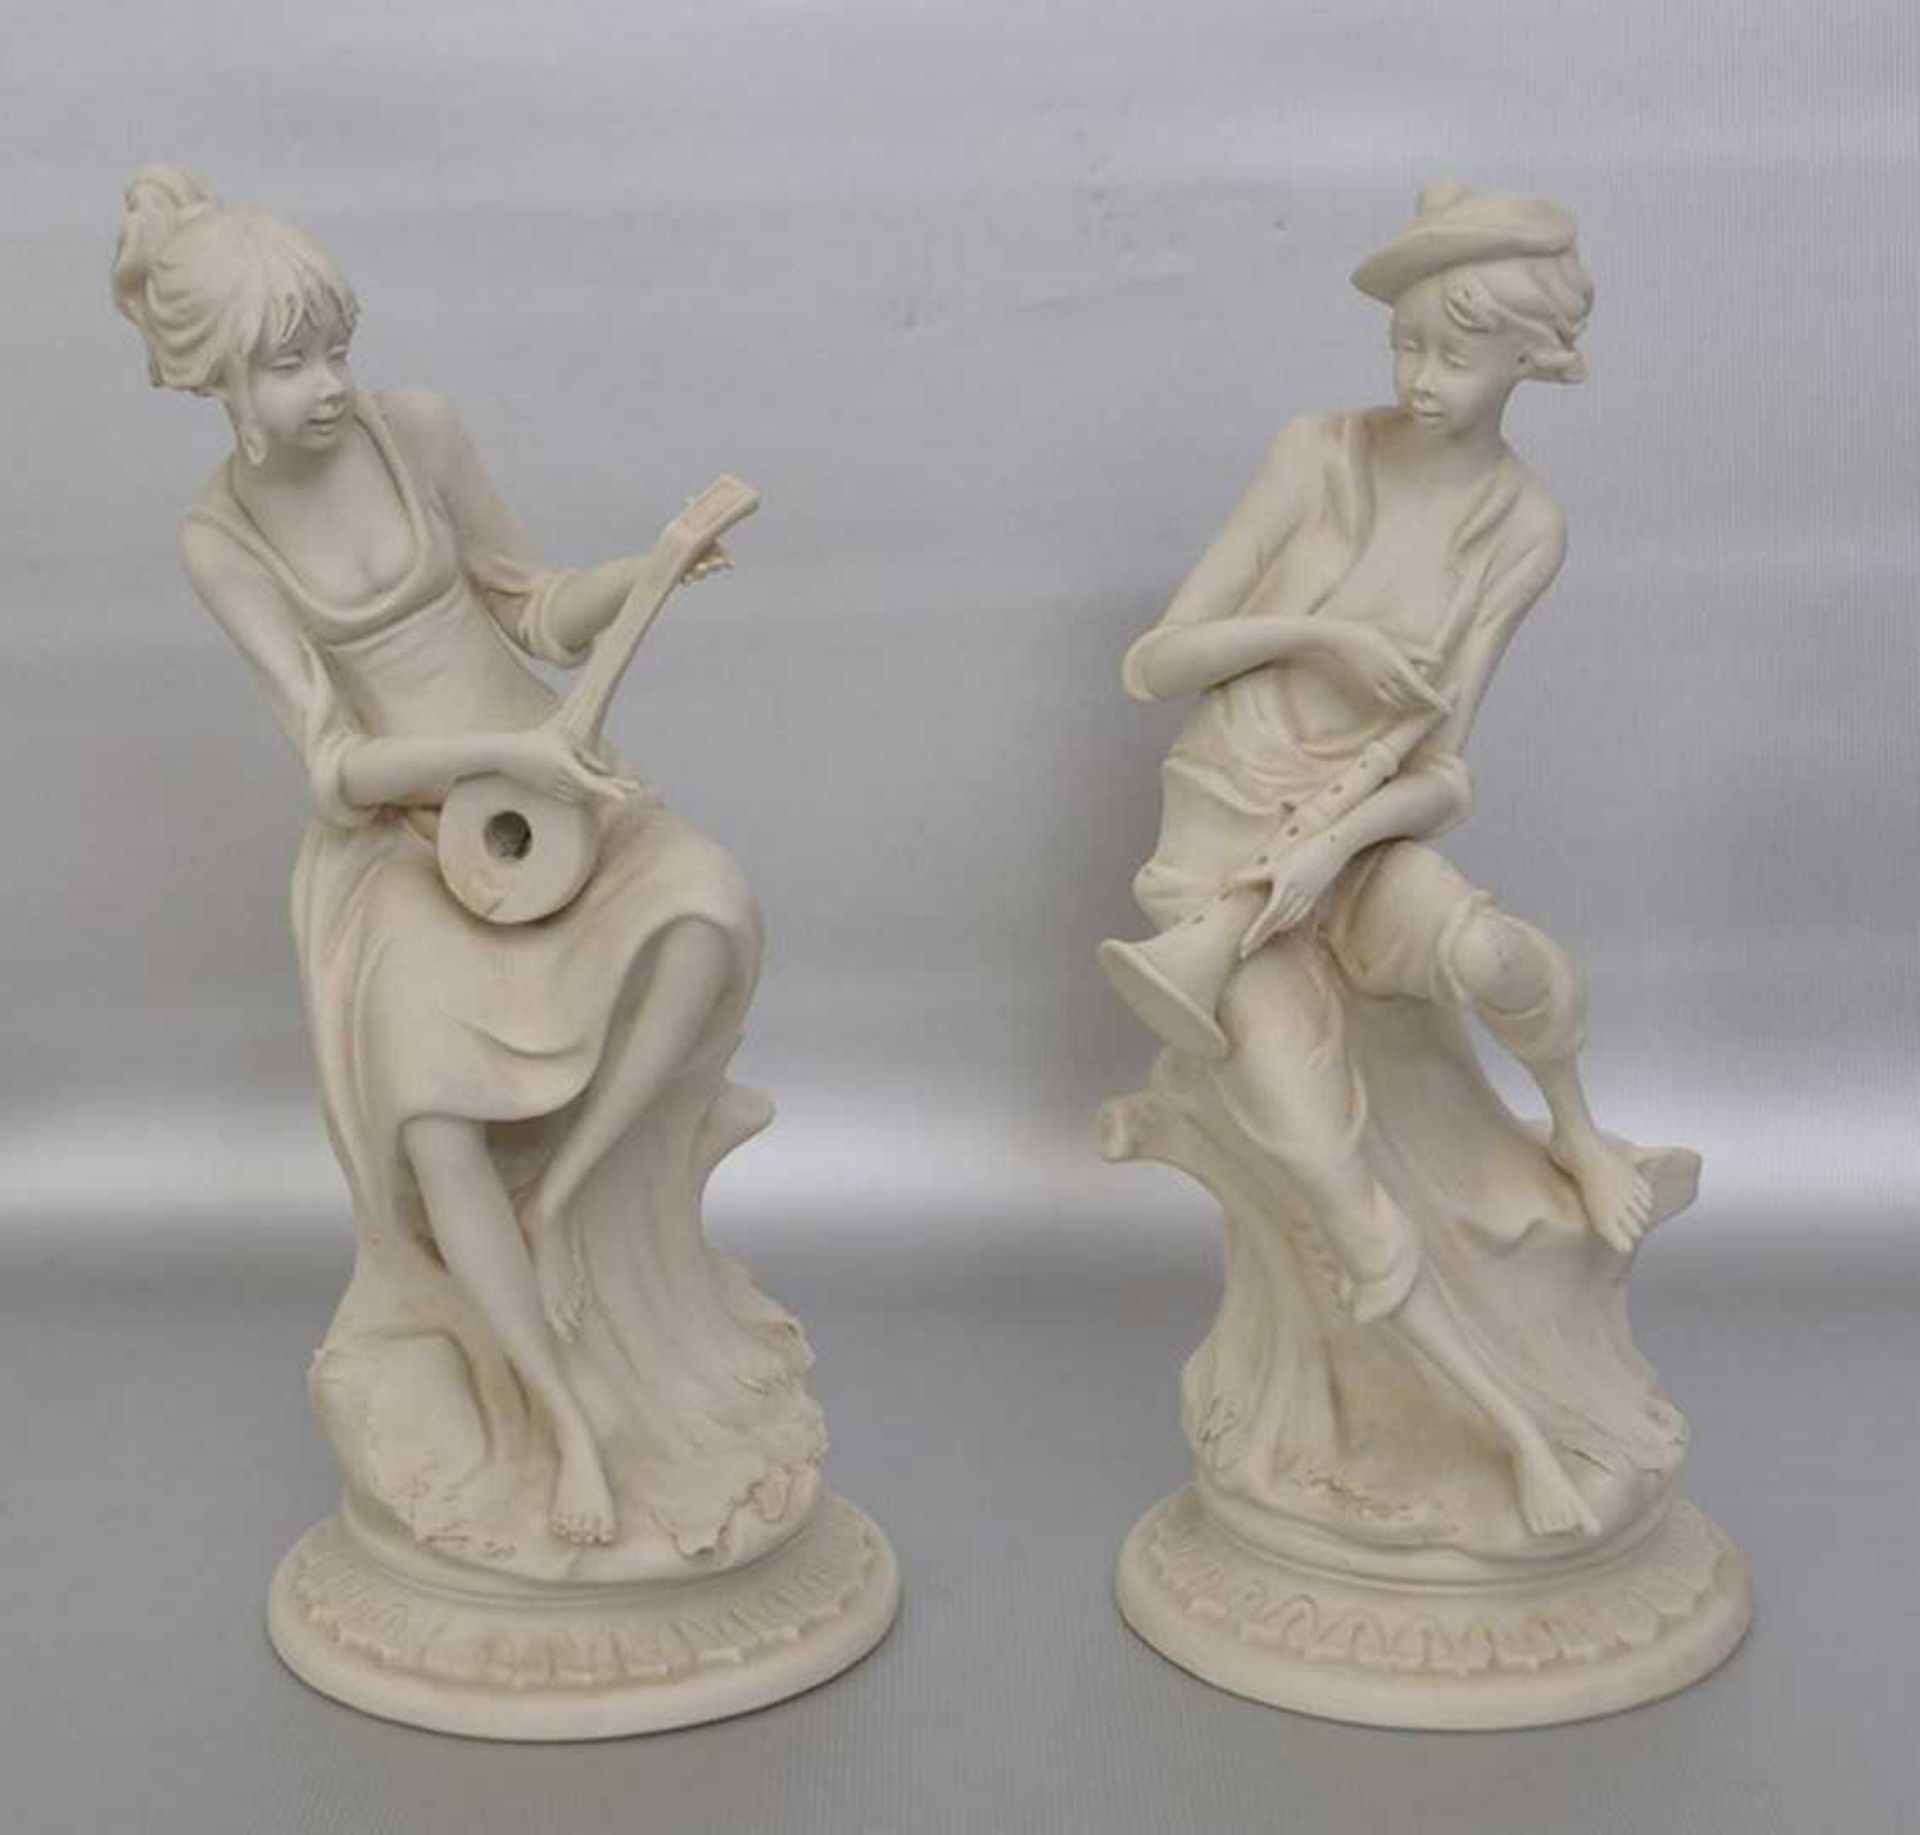 Musizierendes Figurenpaar Biskuitporzellan, auf rundem Sockel sitzend, mit Flöte bzw. Gitarre, H